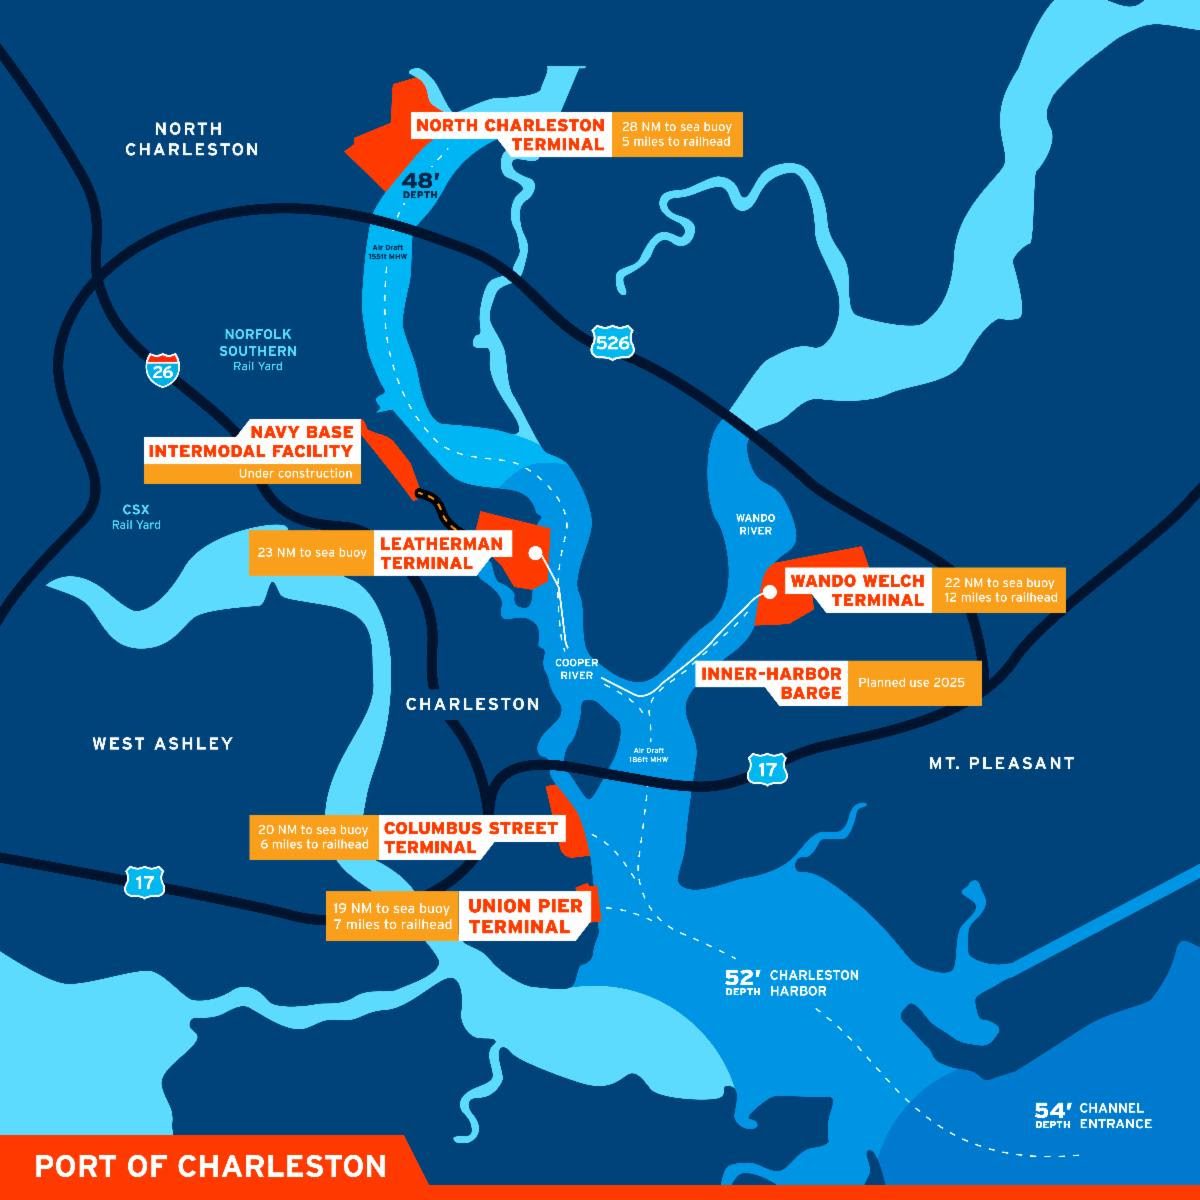 Charleston has deepest harbor on East Coast at 52 feet